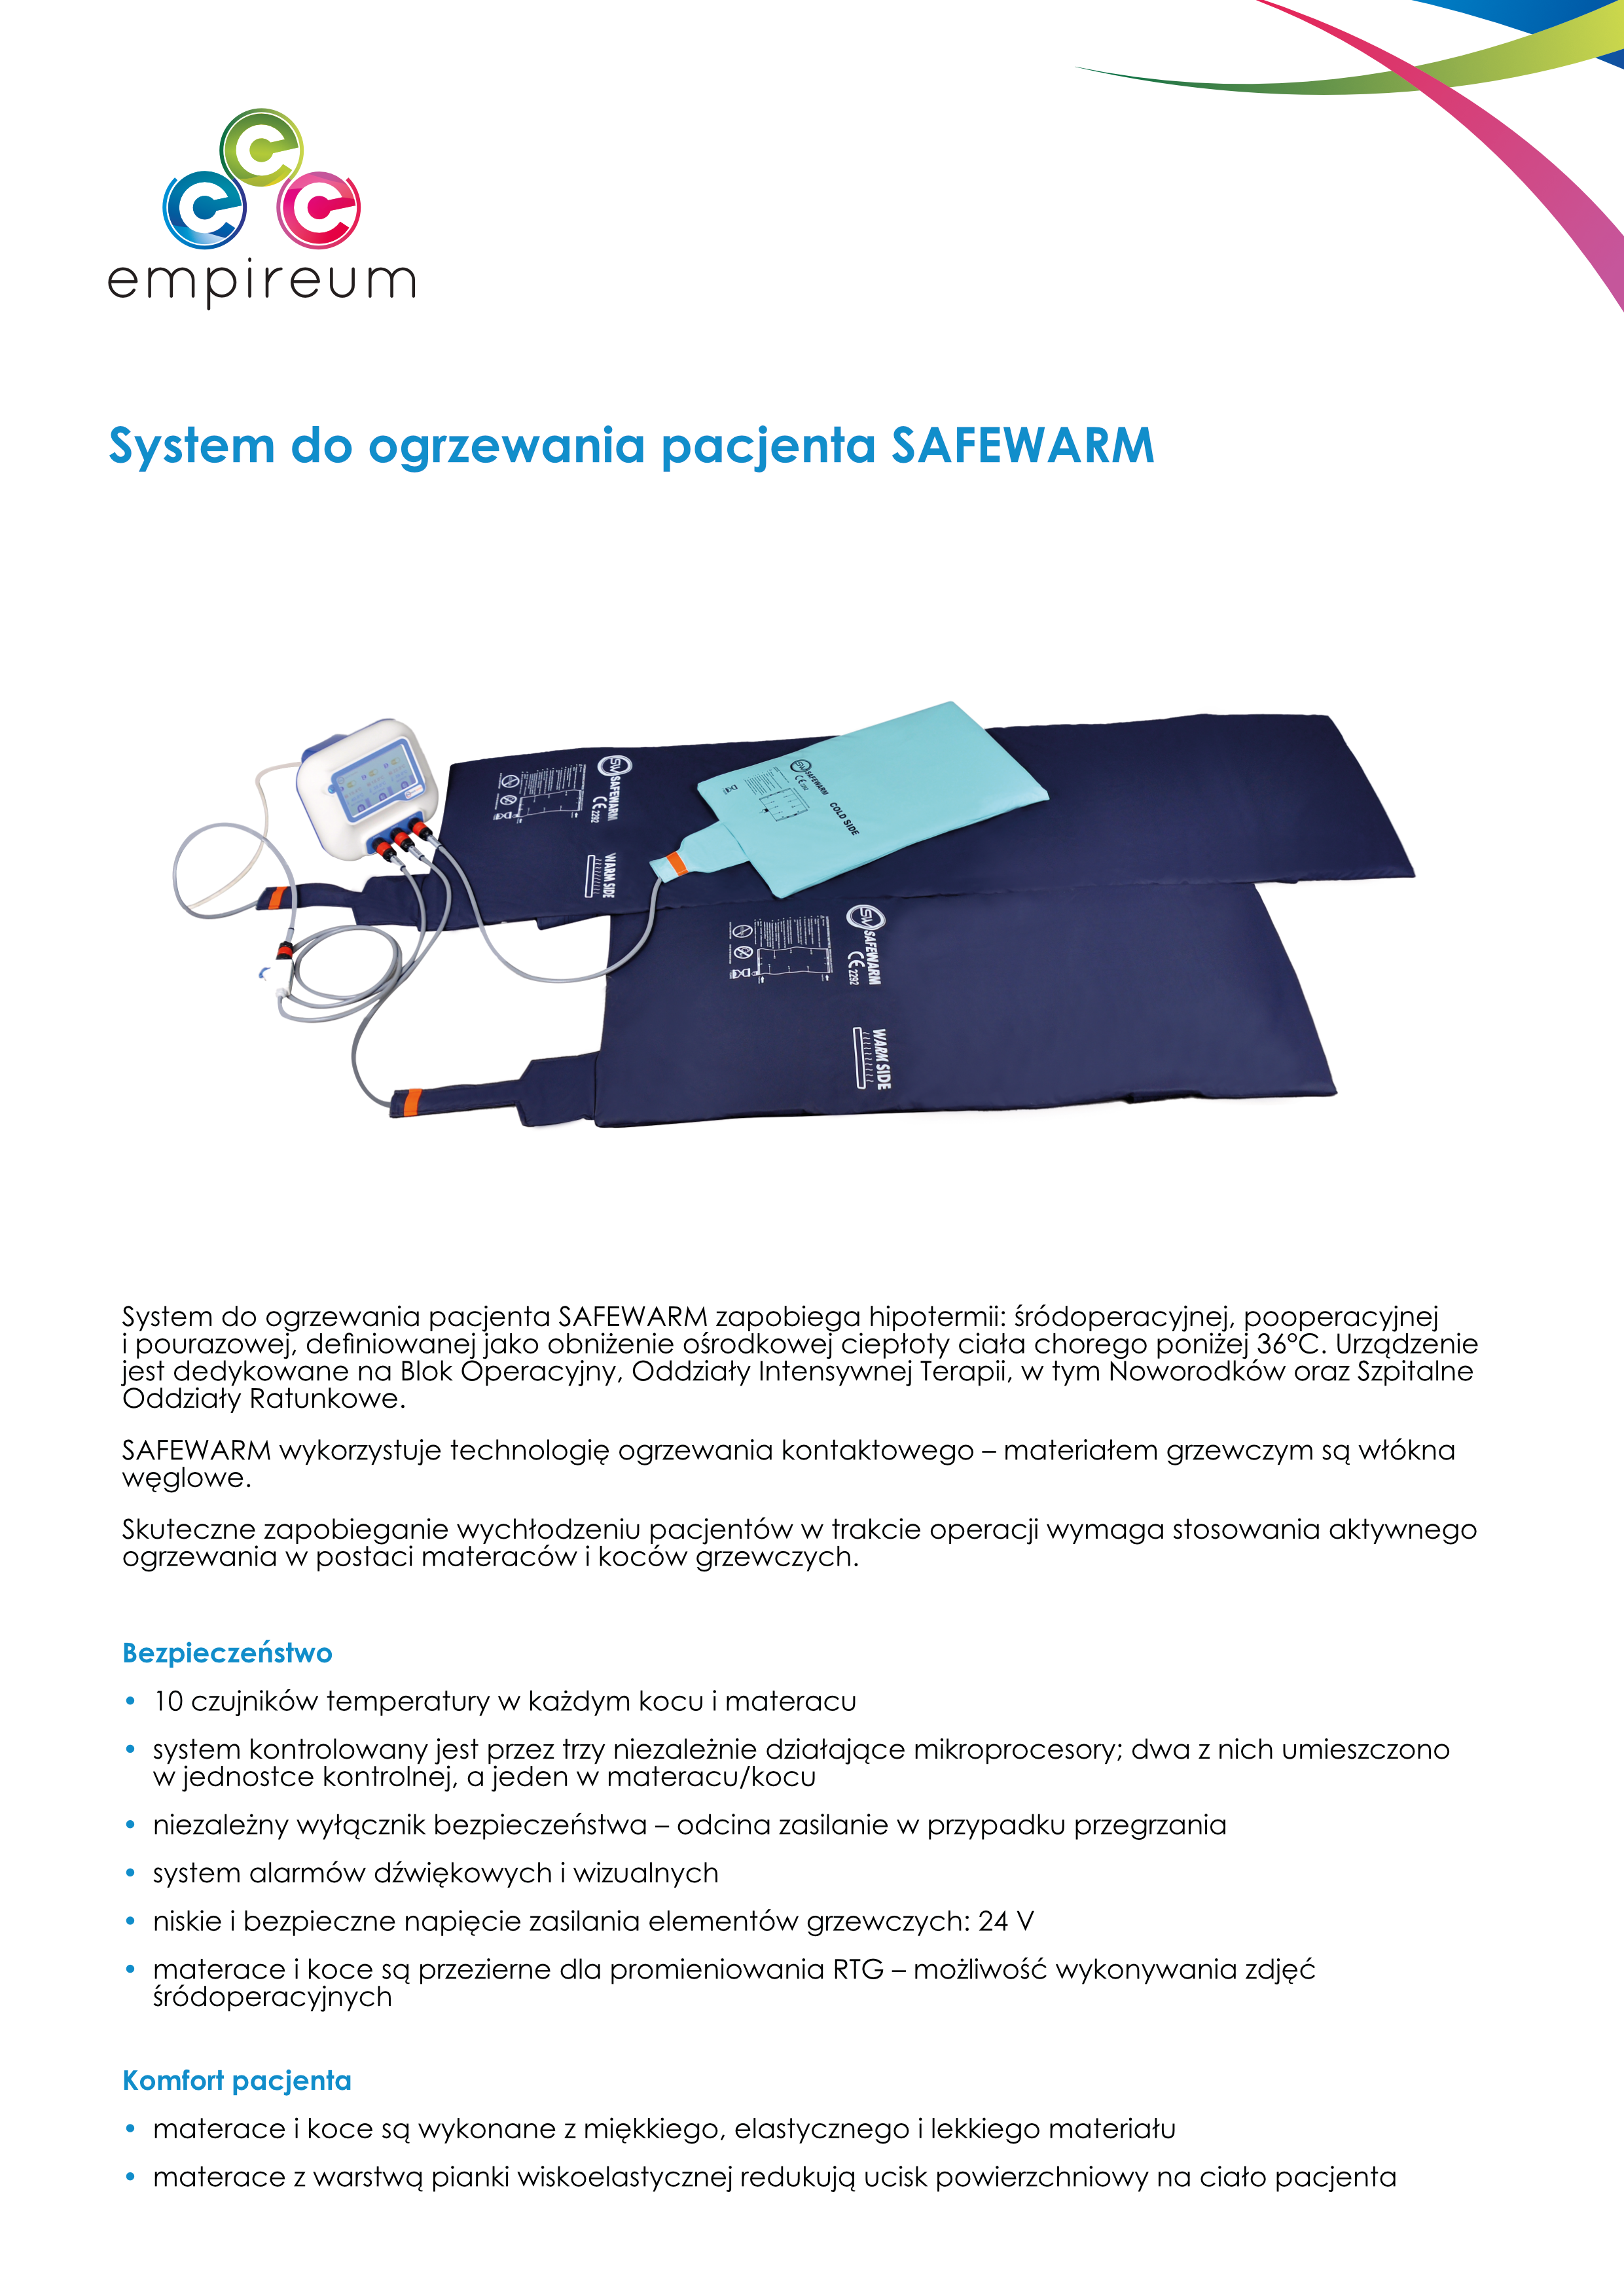 System ogrzewania pacjenta Safewarm